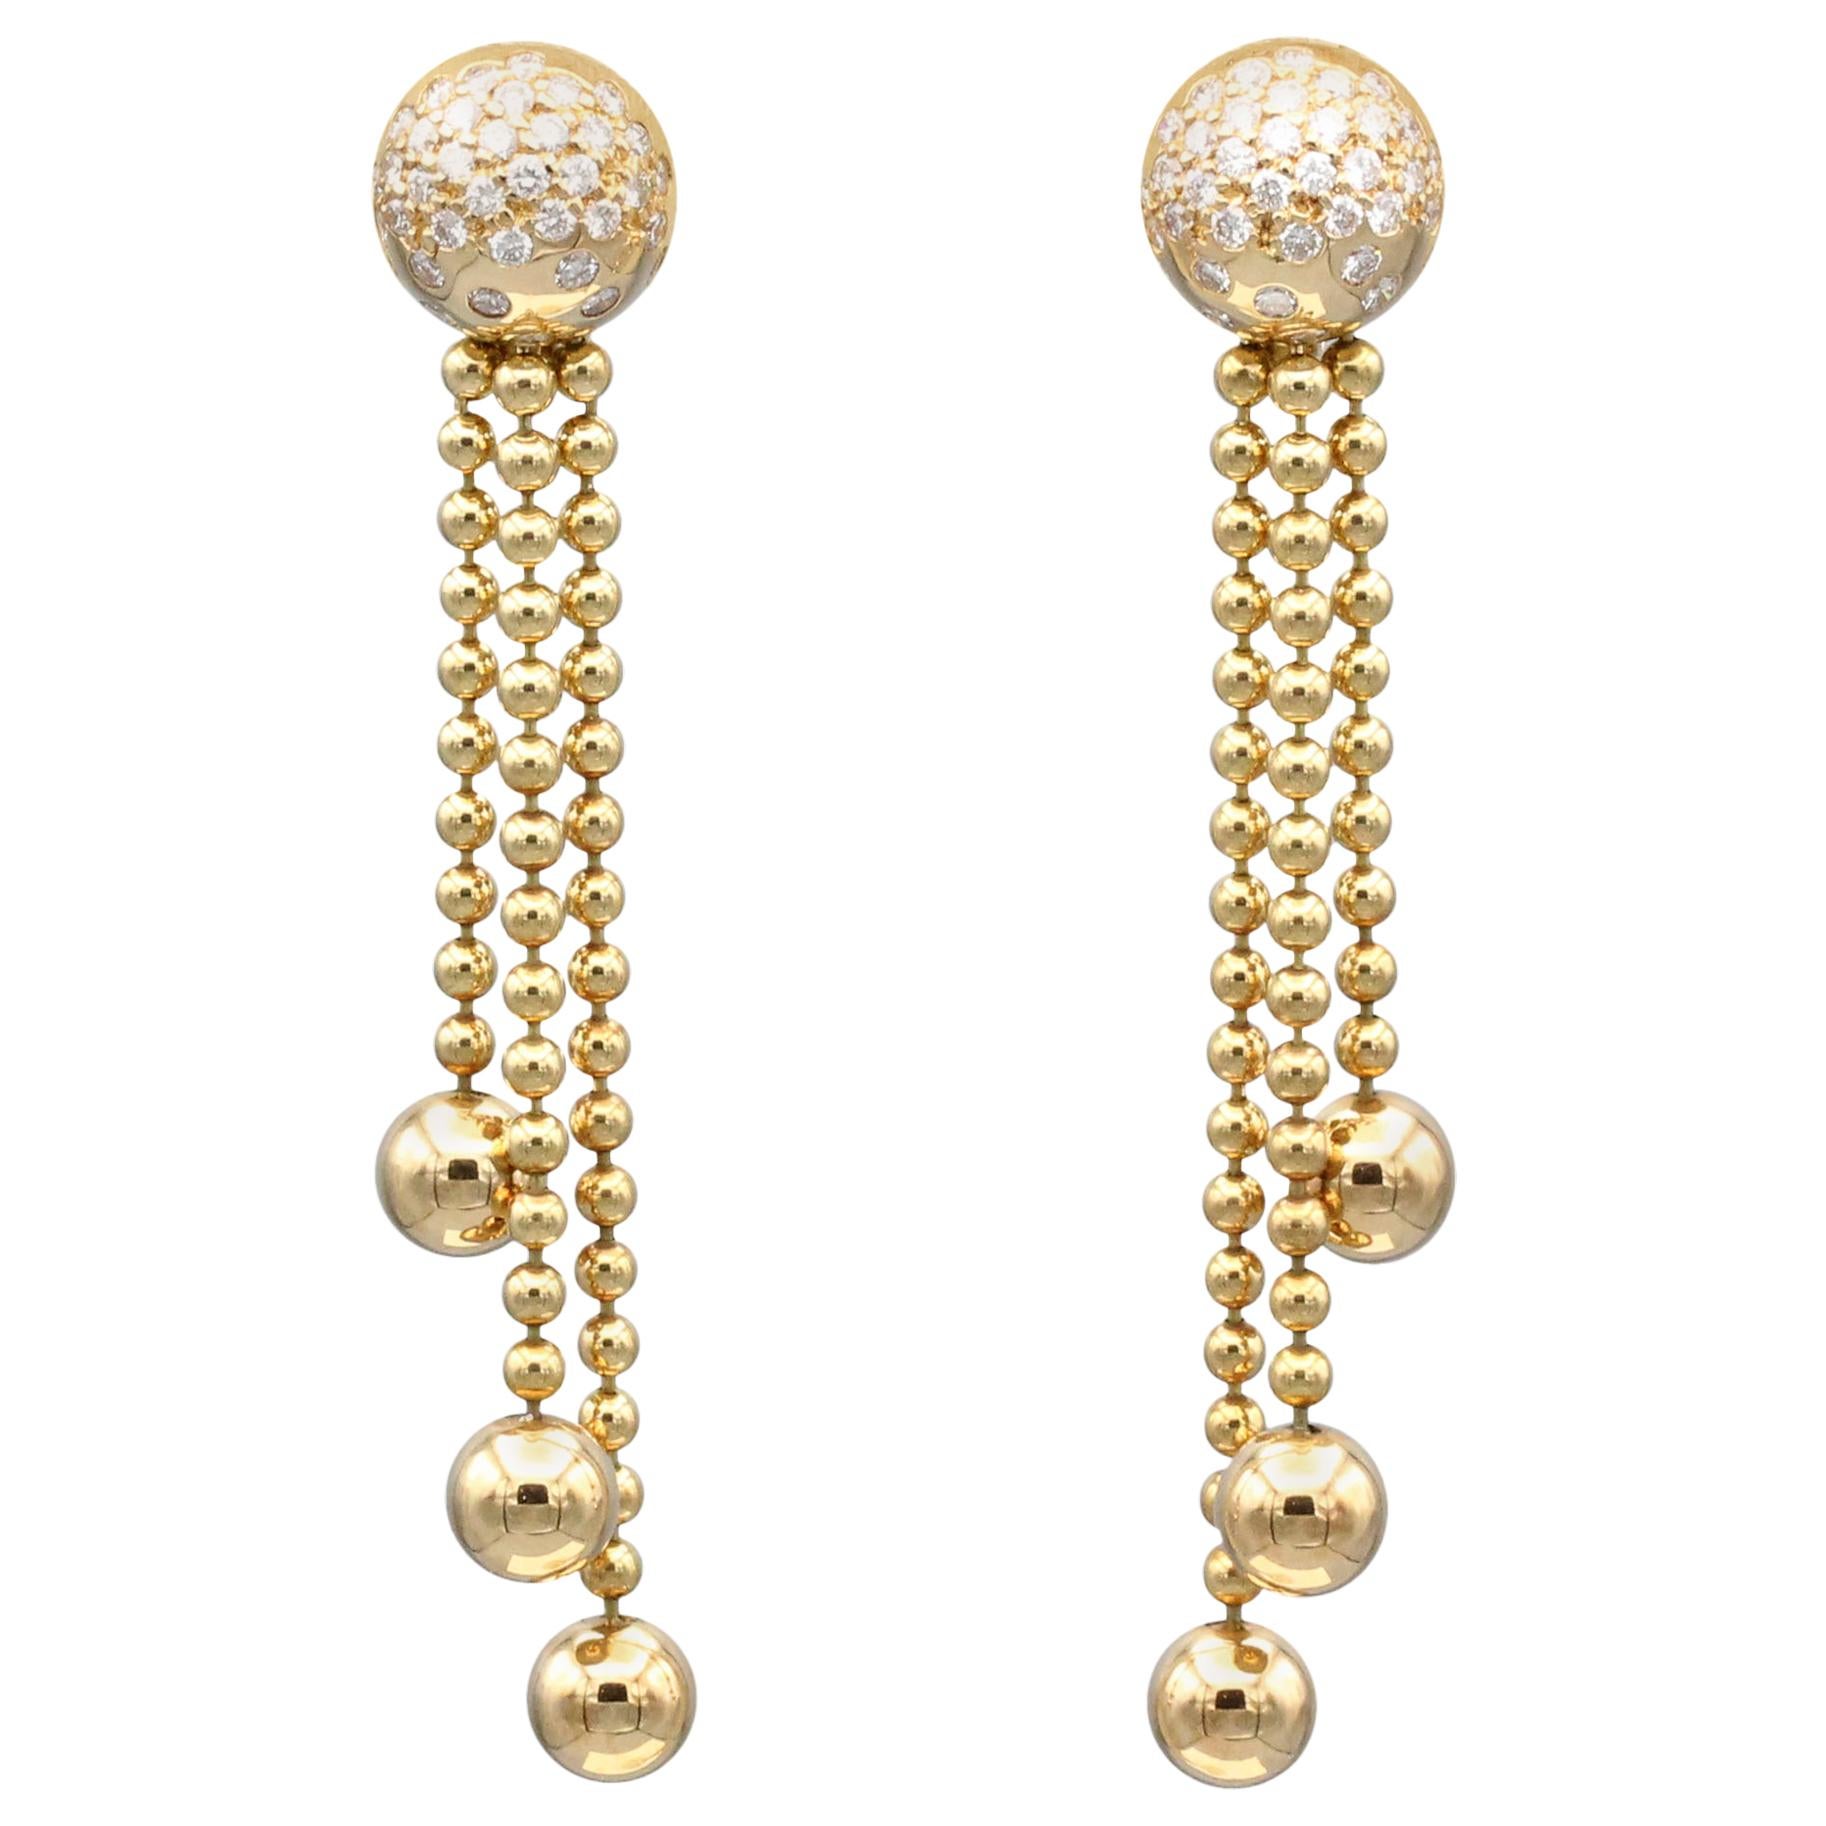 Cartier Draperie Diamond Gold Chandelier Earrings